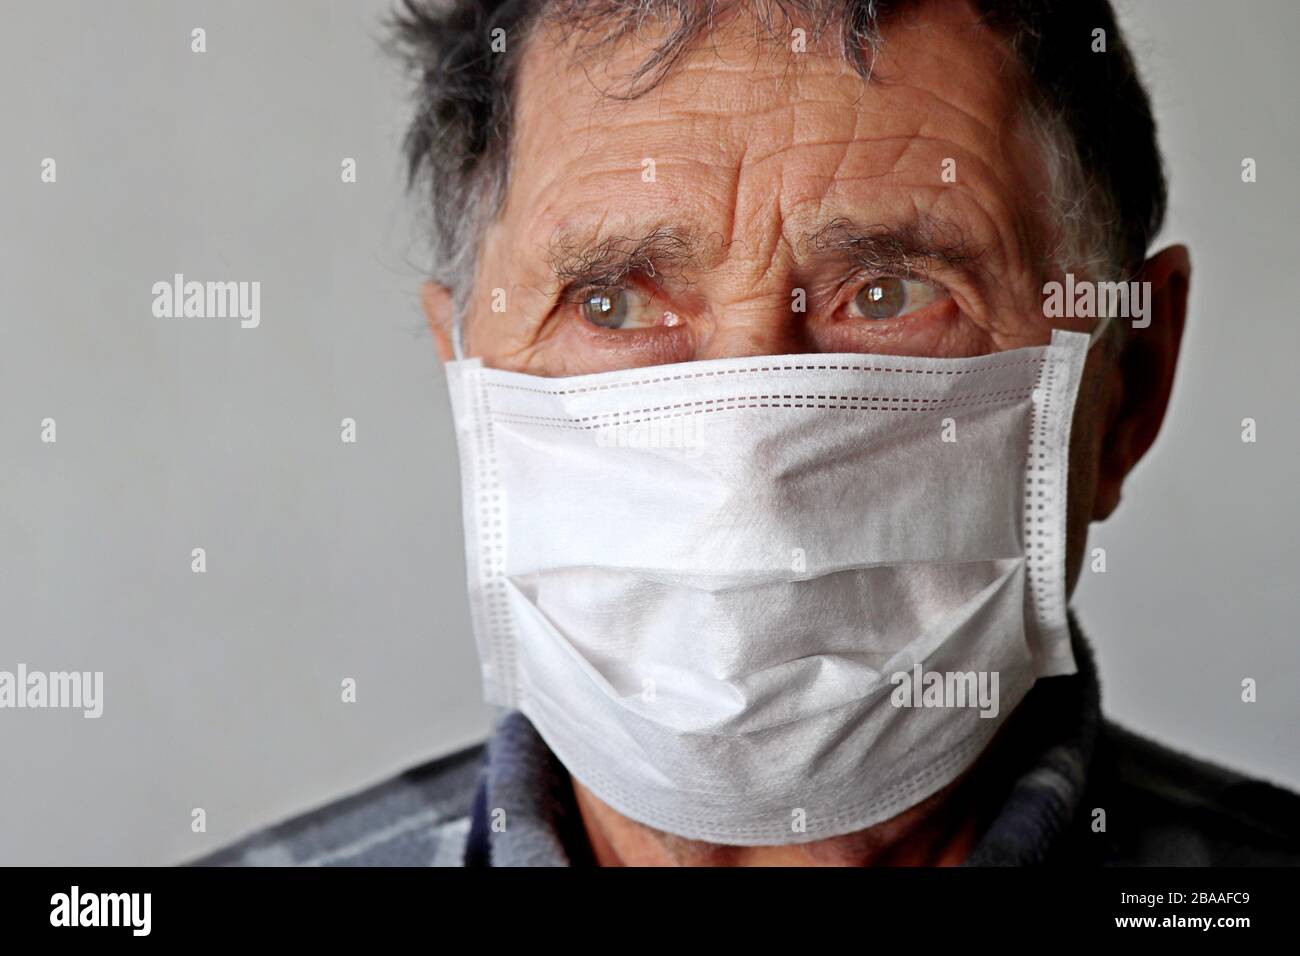 Älterer Mann in medizinischer Maske sieht verärgert aus. Konzept des COVID-19-Coronavirus-Schutzes, Krankheit, Fieber, Kälte und Grippe Stockfoto